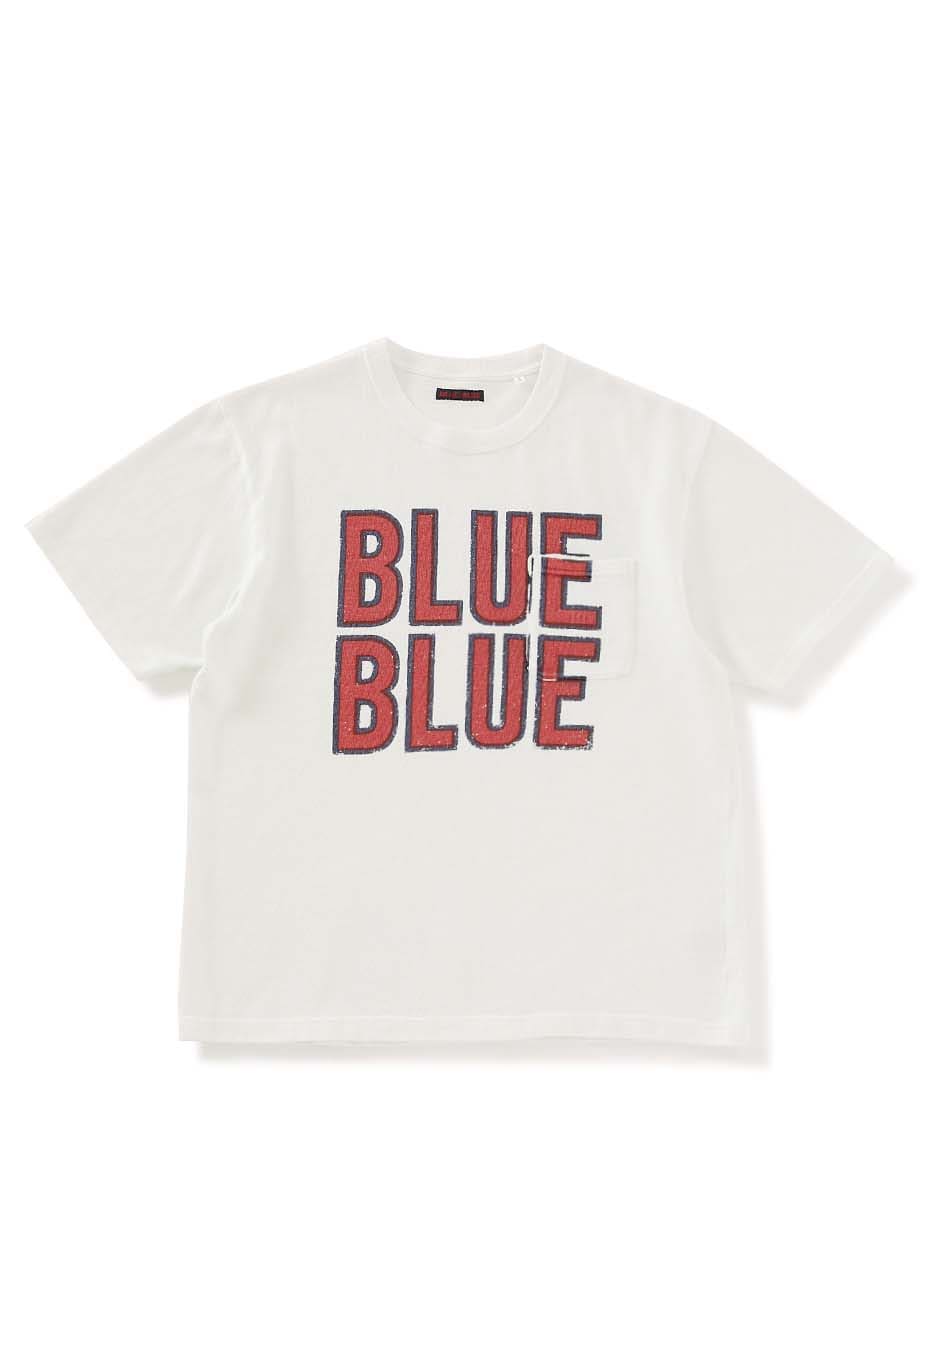 BLUE BLUE ビッグロゴヘビーウエイト ポケットTシャツ